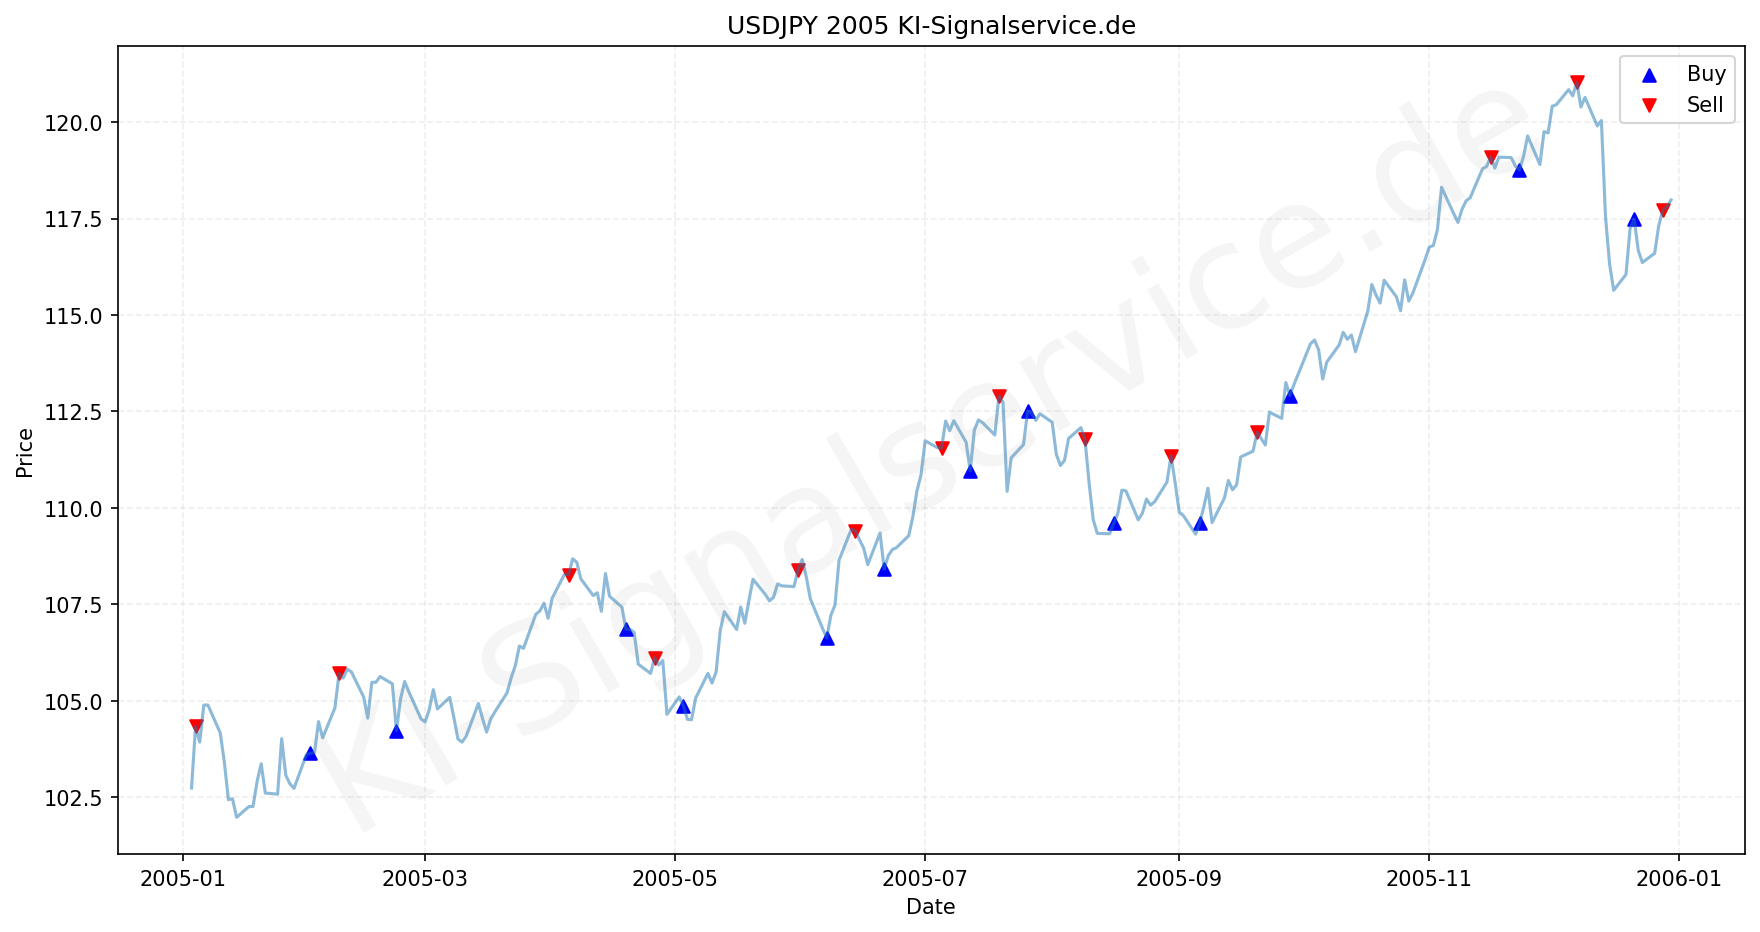 USDJPY Chart - KI Tradingsignale 2005